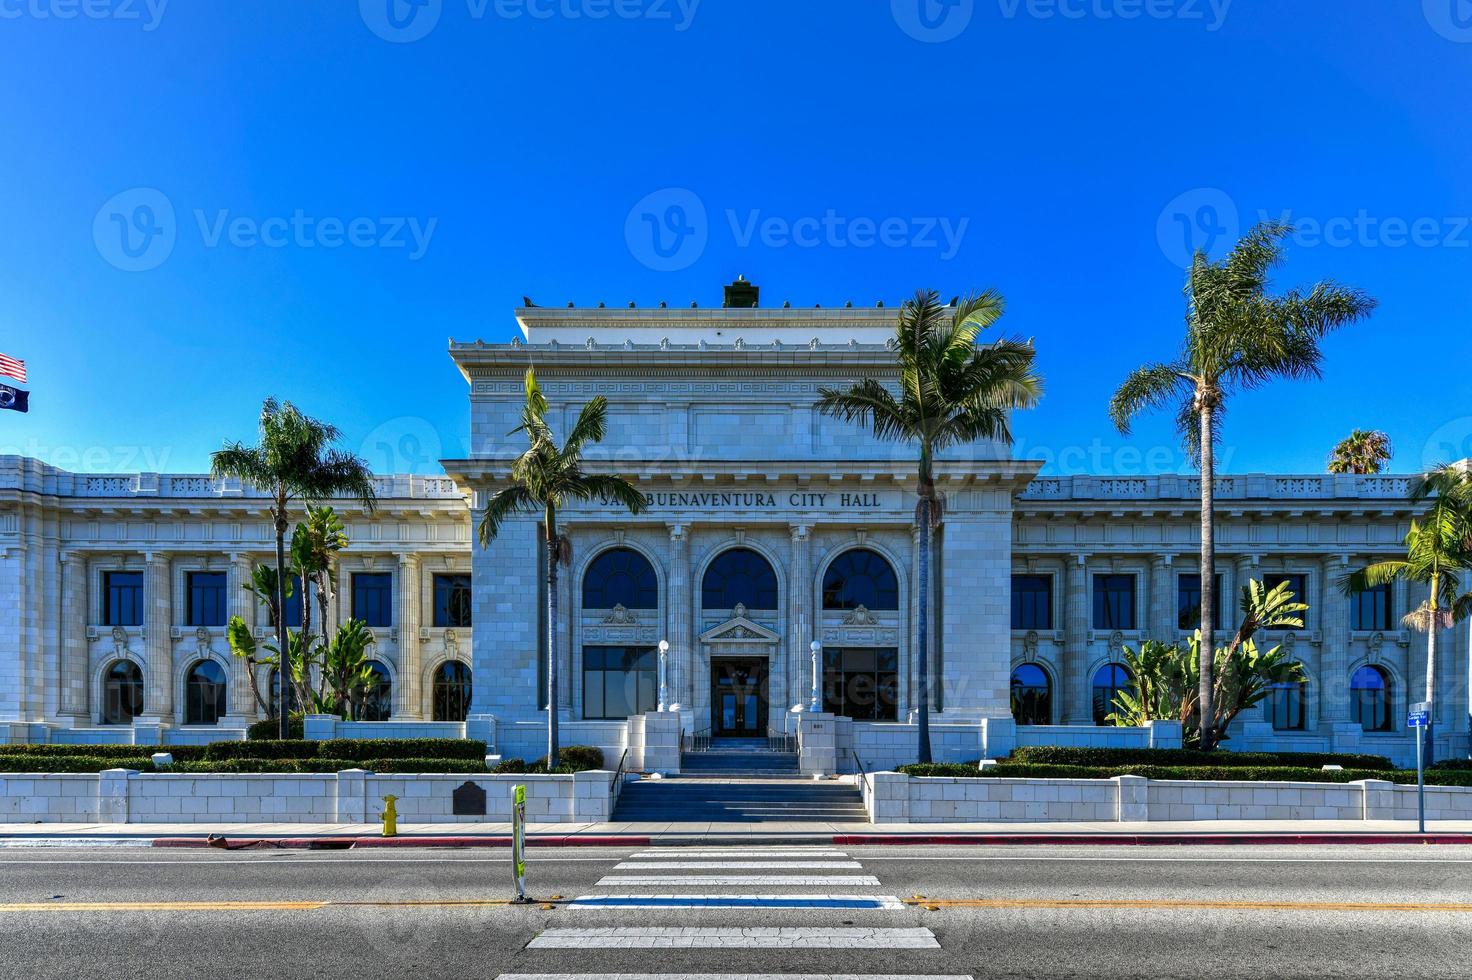 Vordereingang zum historischen Rathaus von Ventura in Südkalifornien. foto